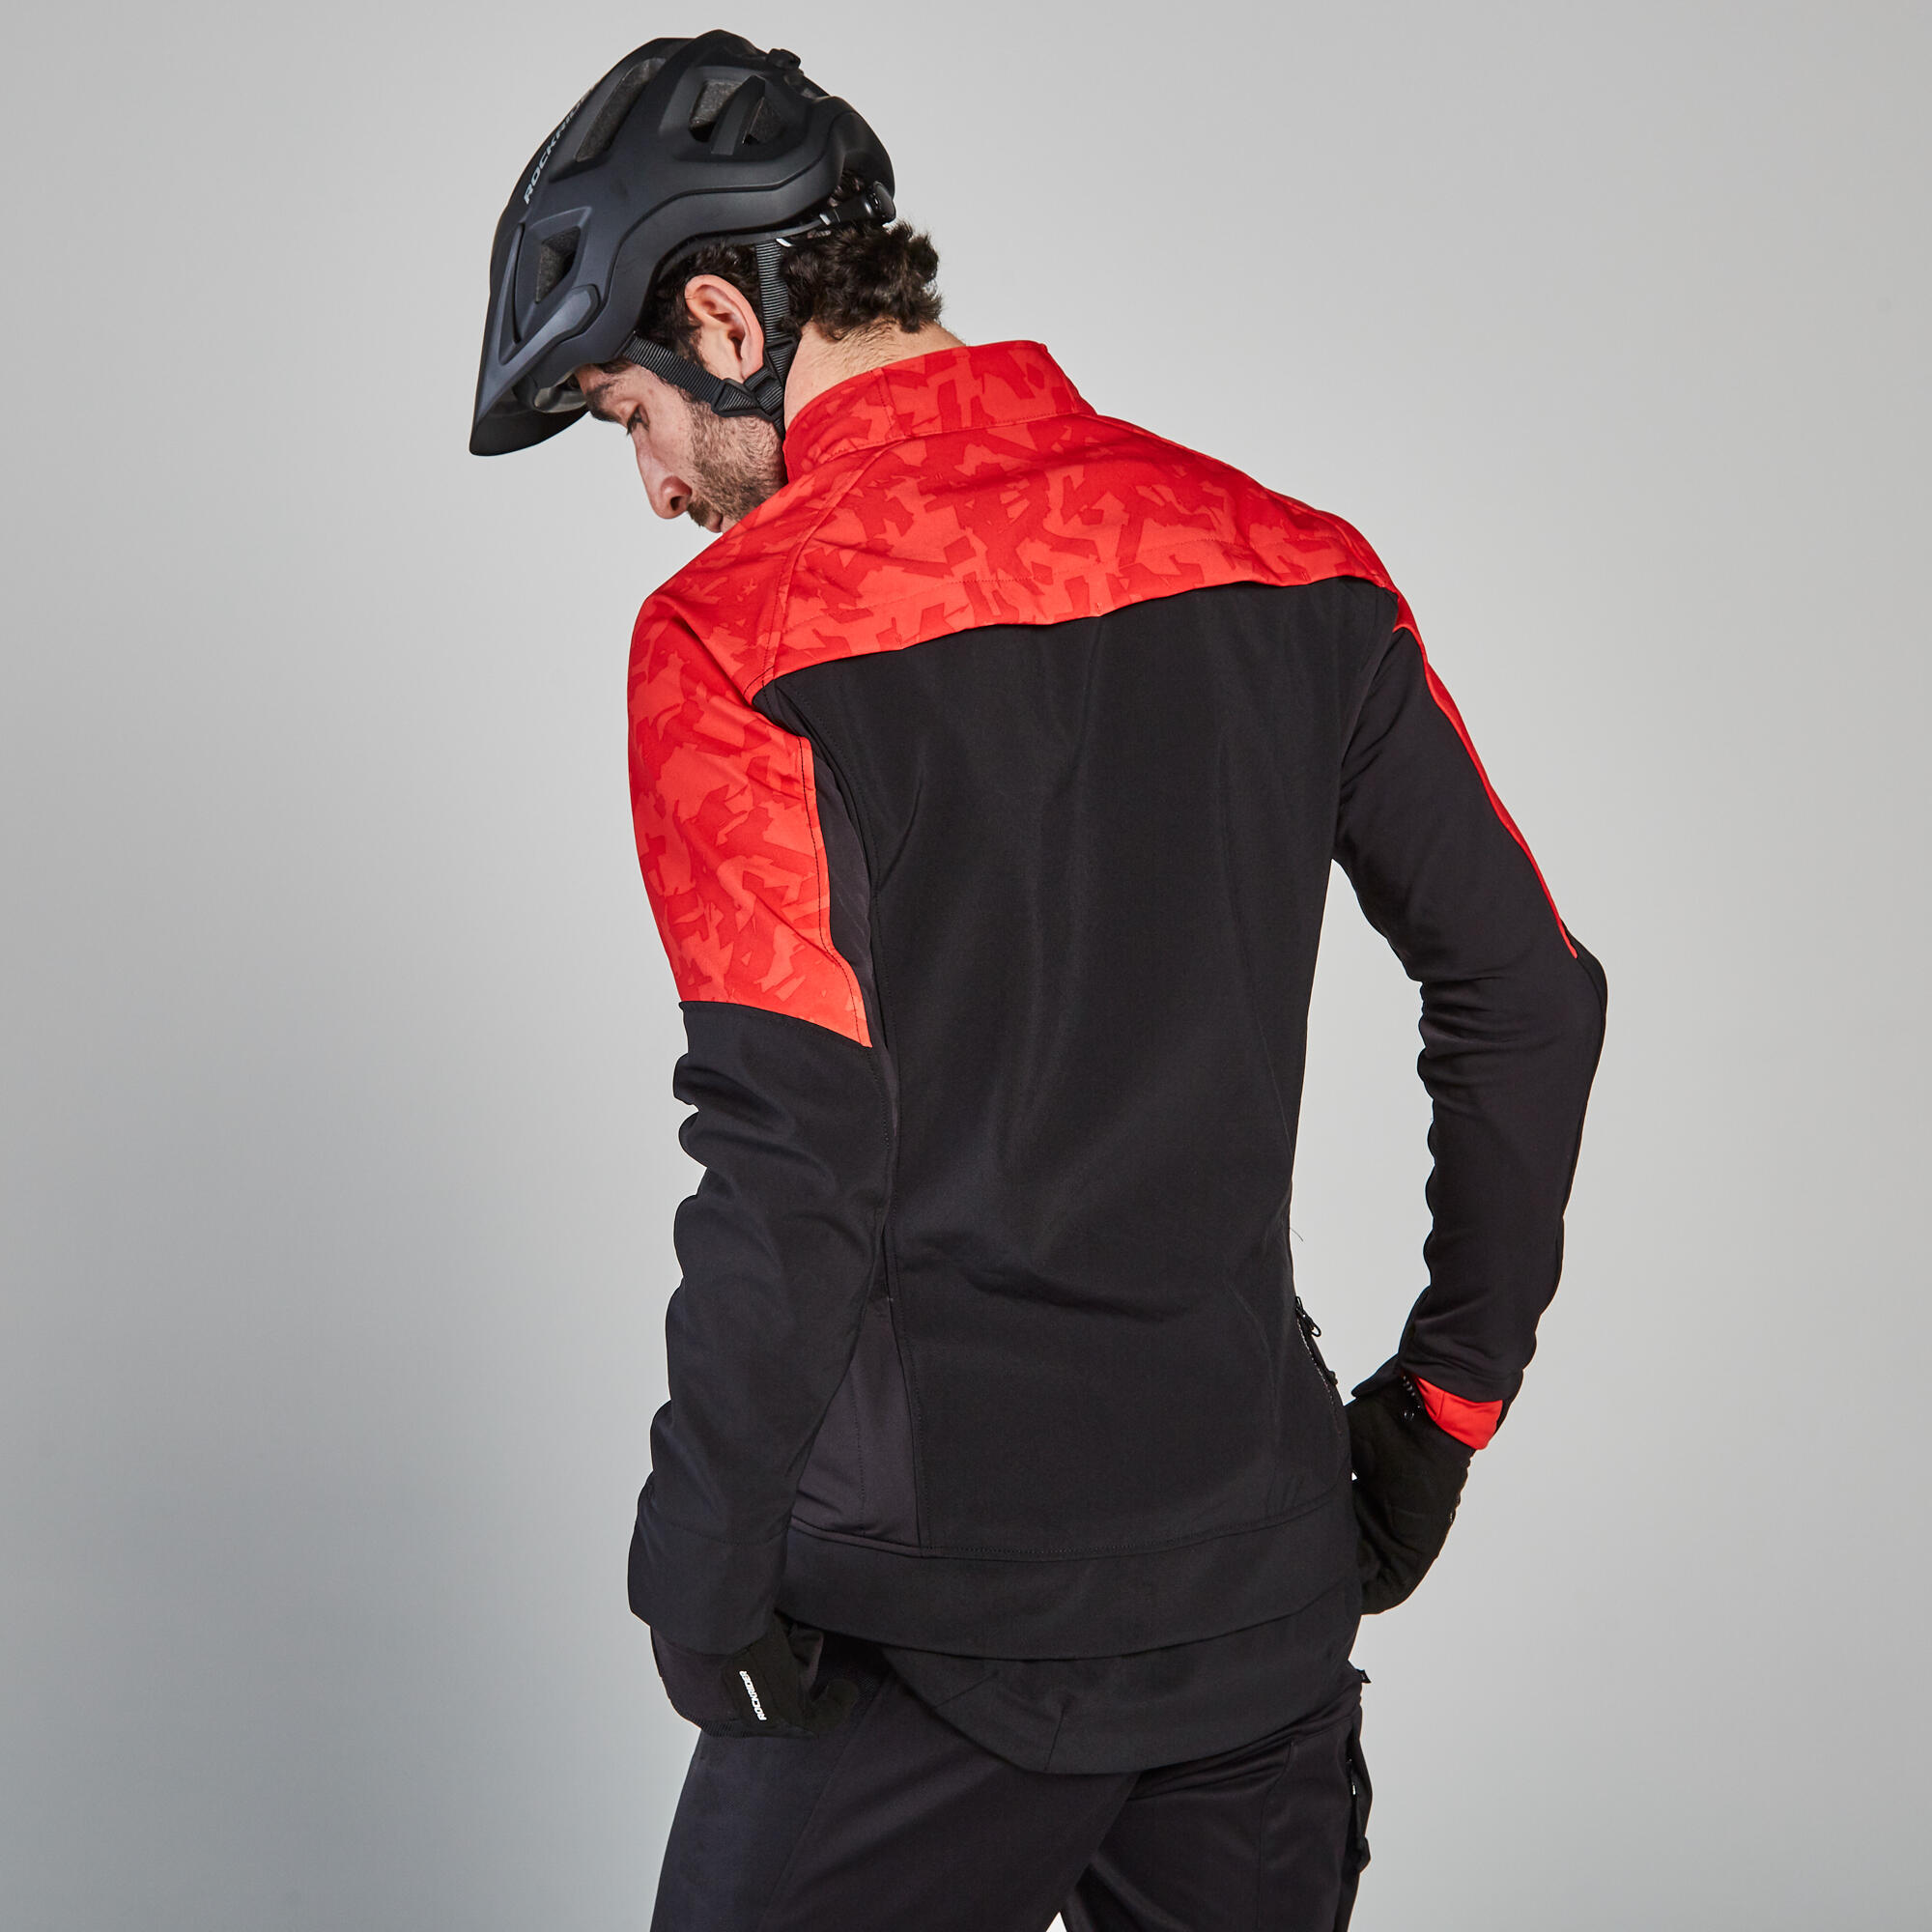 ROCKBROS Chaqueta de ciclismo de invierno para hombre, forro polar térmico,  resistente al viento, para correr, ciclismo, senderismo, Rojo- negro